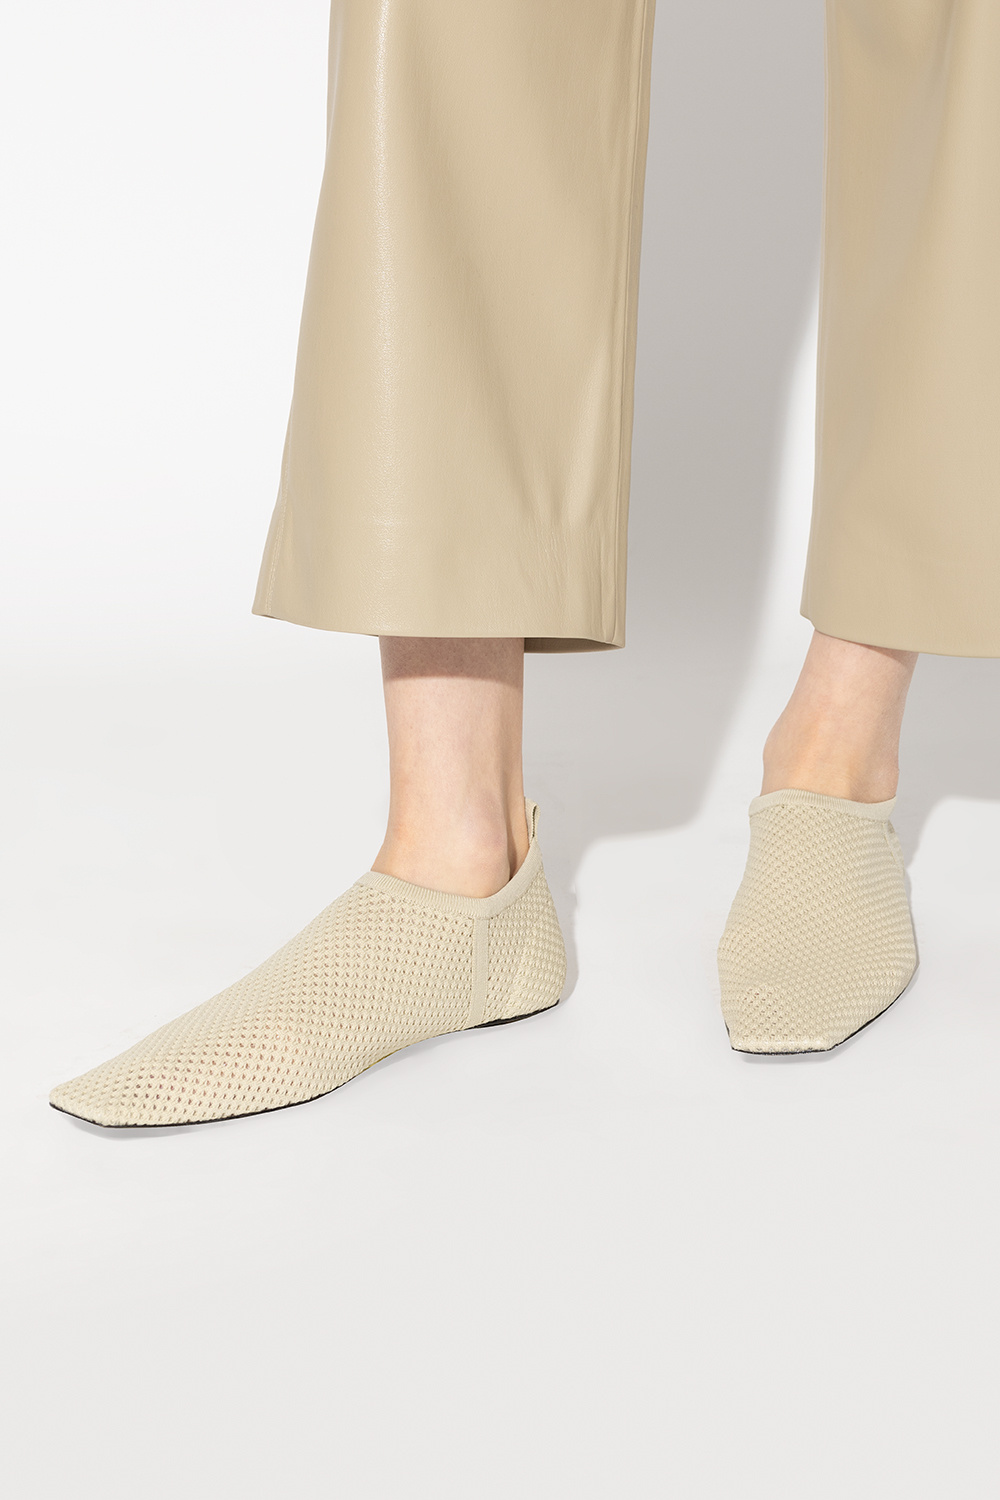 Nanushka ‘Buju’ Tapered shoes